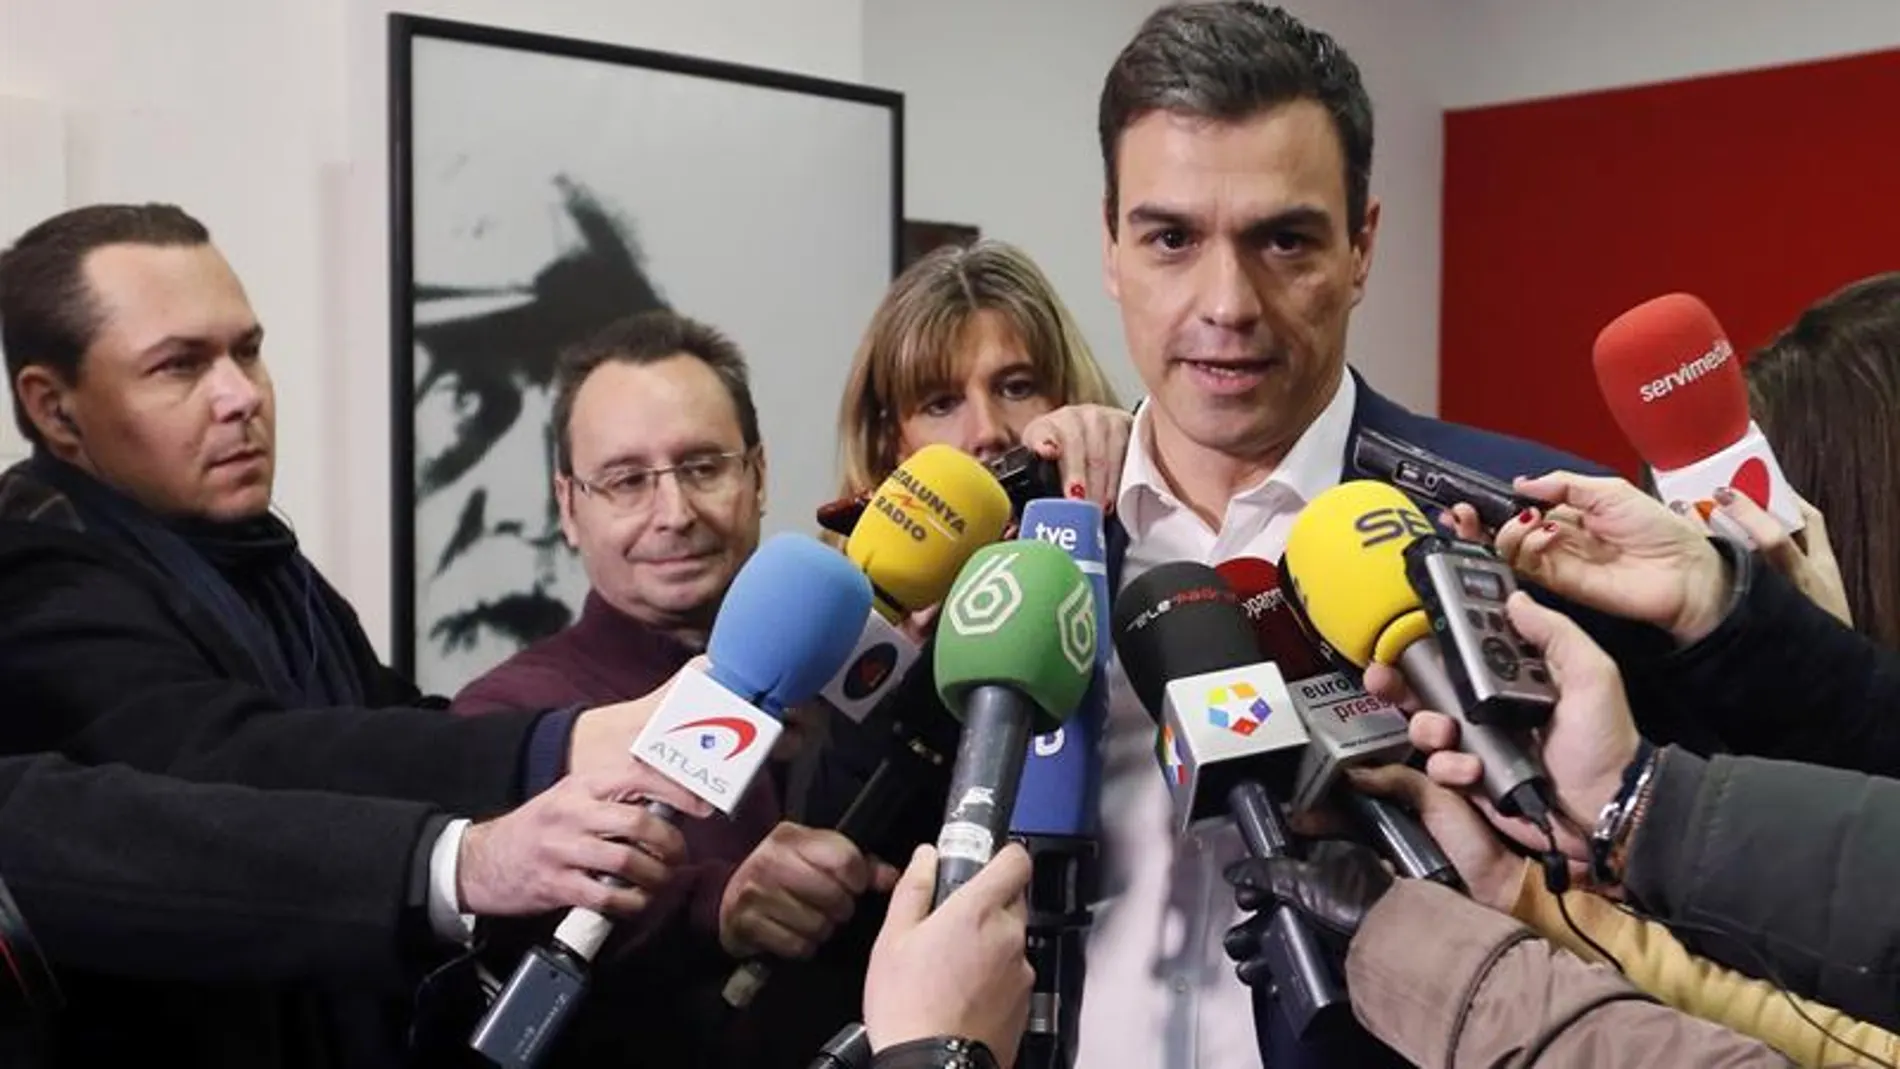 Pedro Sánchez, sobre la consulta del pacto con Ciudadanos: "Animo a votar con orgullo un pacto coherente con los principios del PSOE"